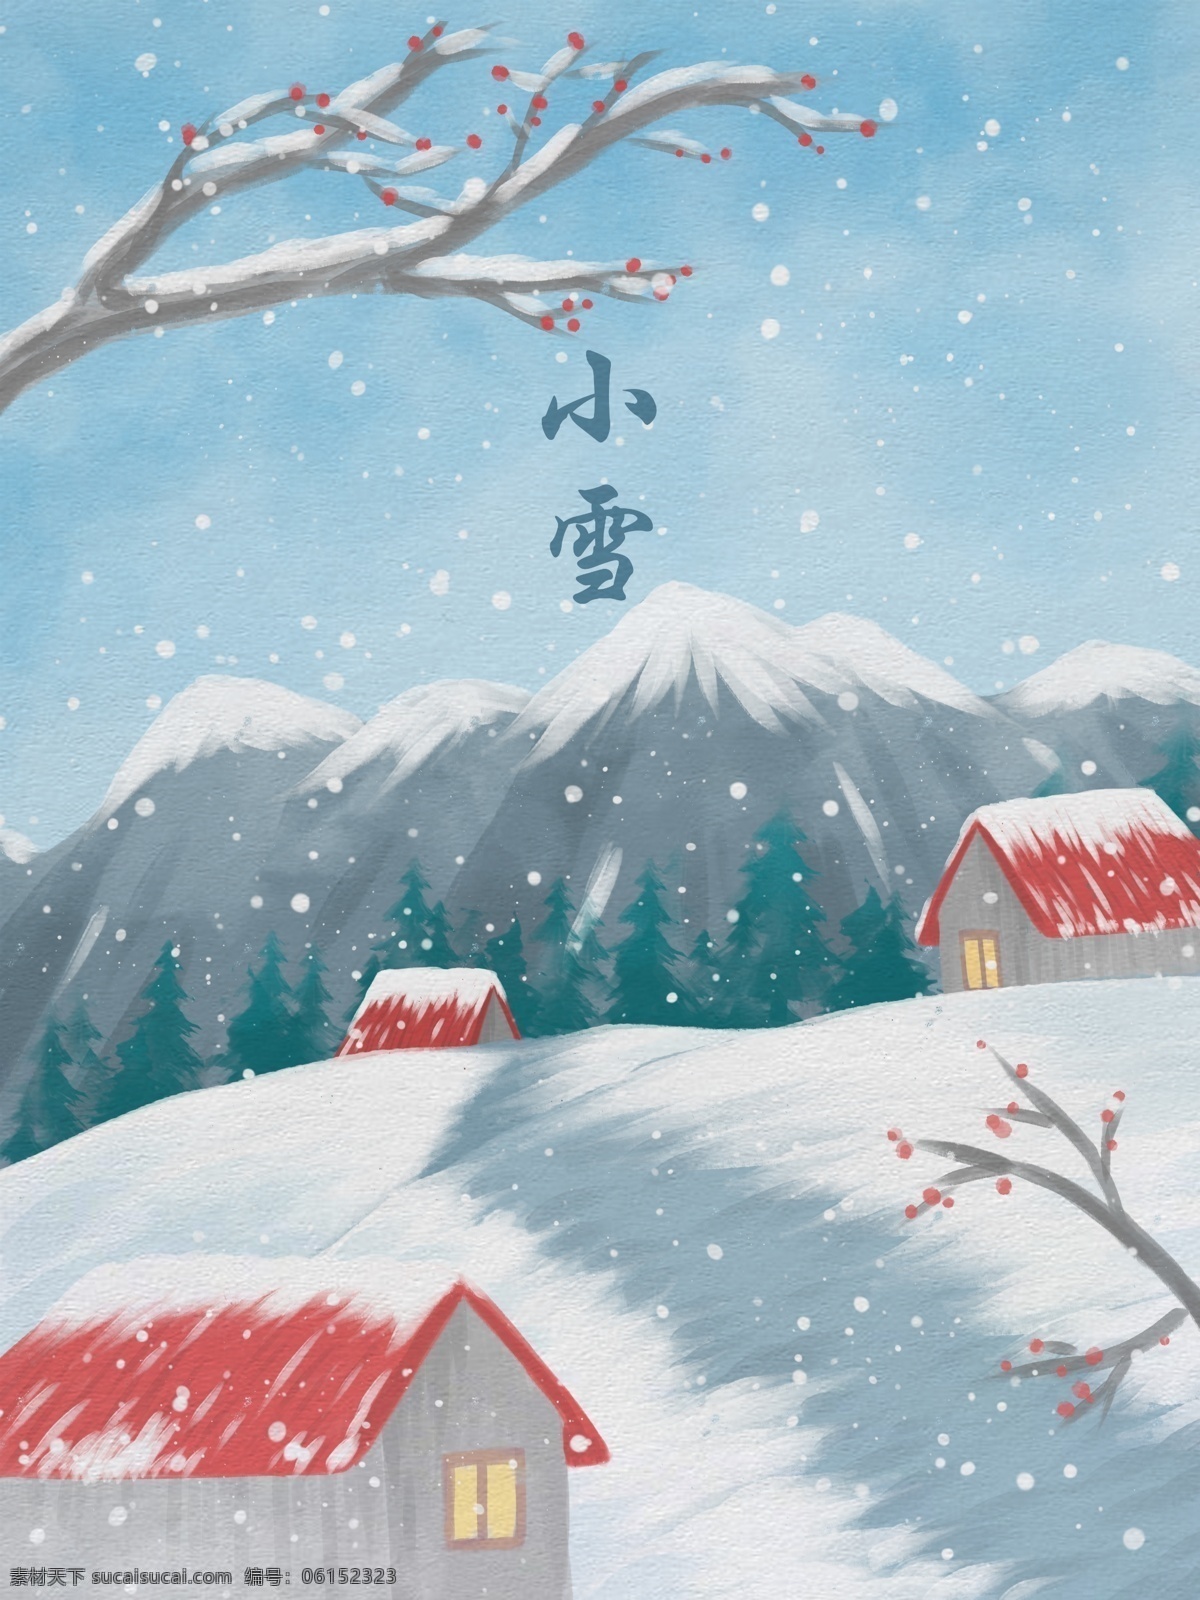 小雪 水彩 插画 雪 中山 前 小 房子 梅花 雪景 雪地 清新 壁纸 山 屋顶 小路 背景